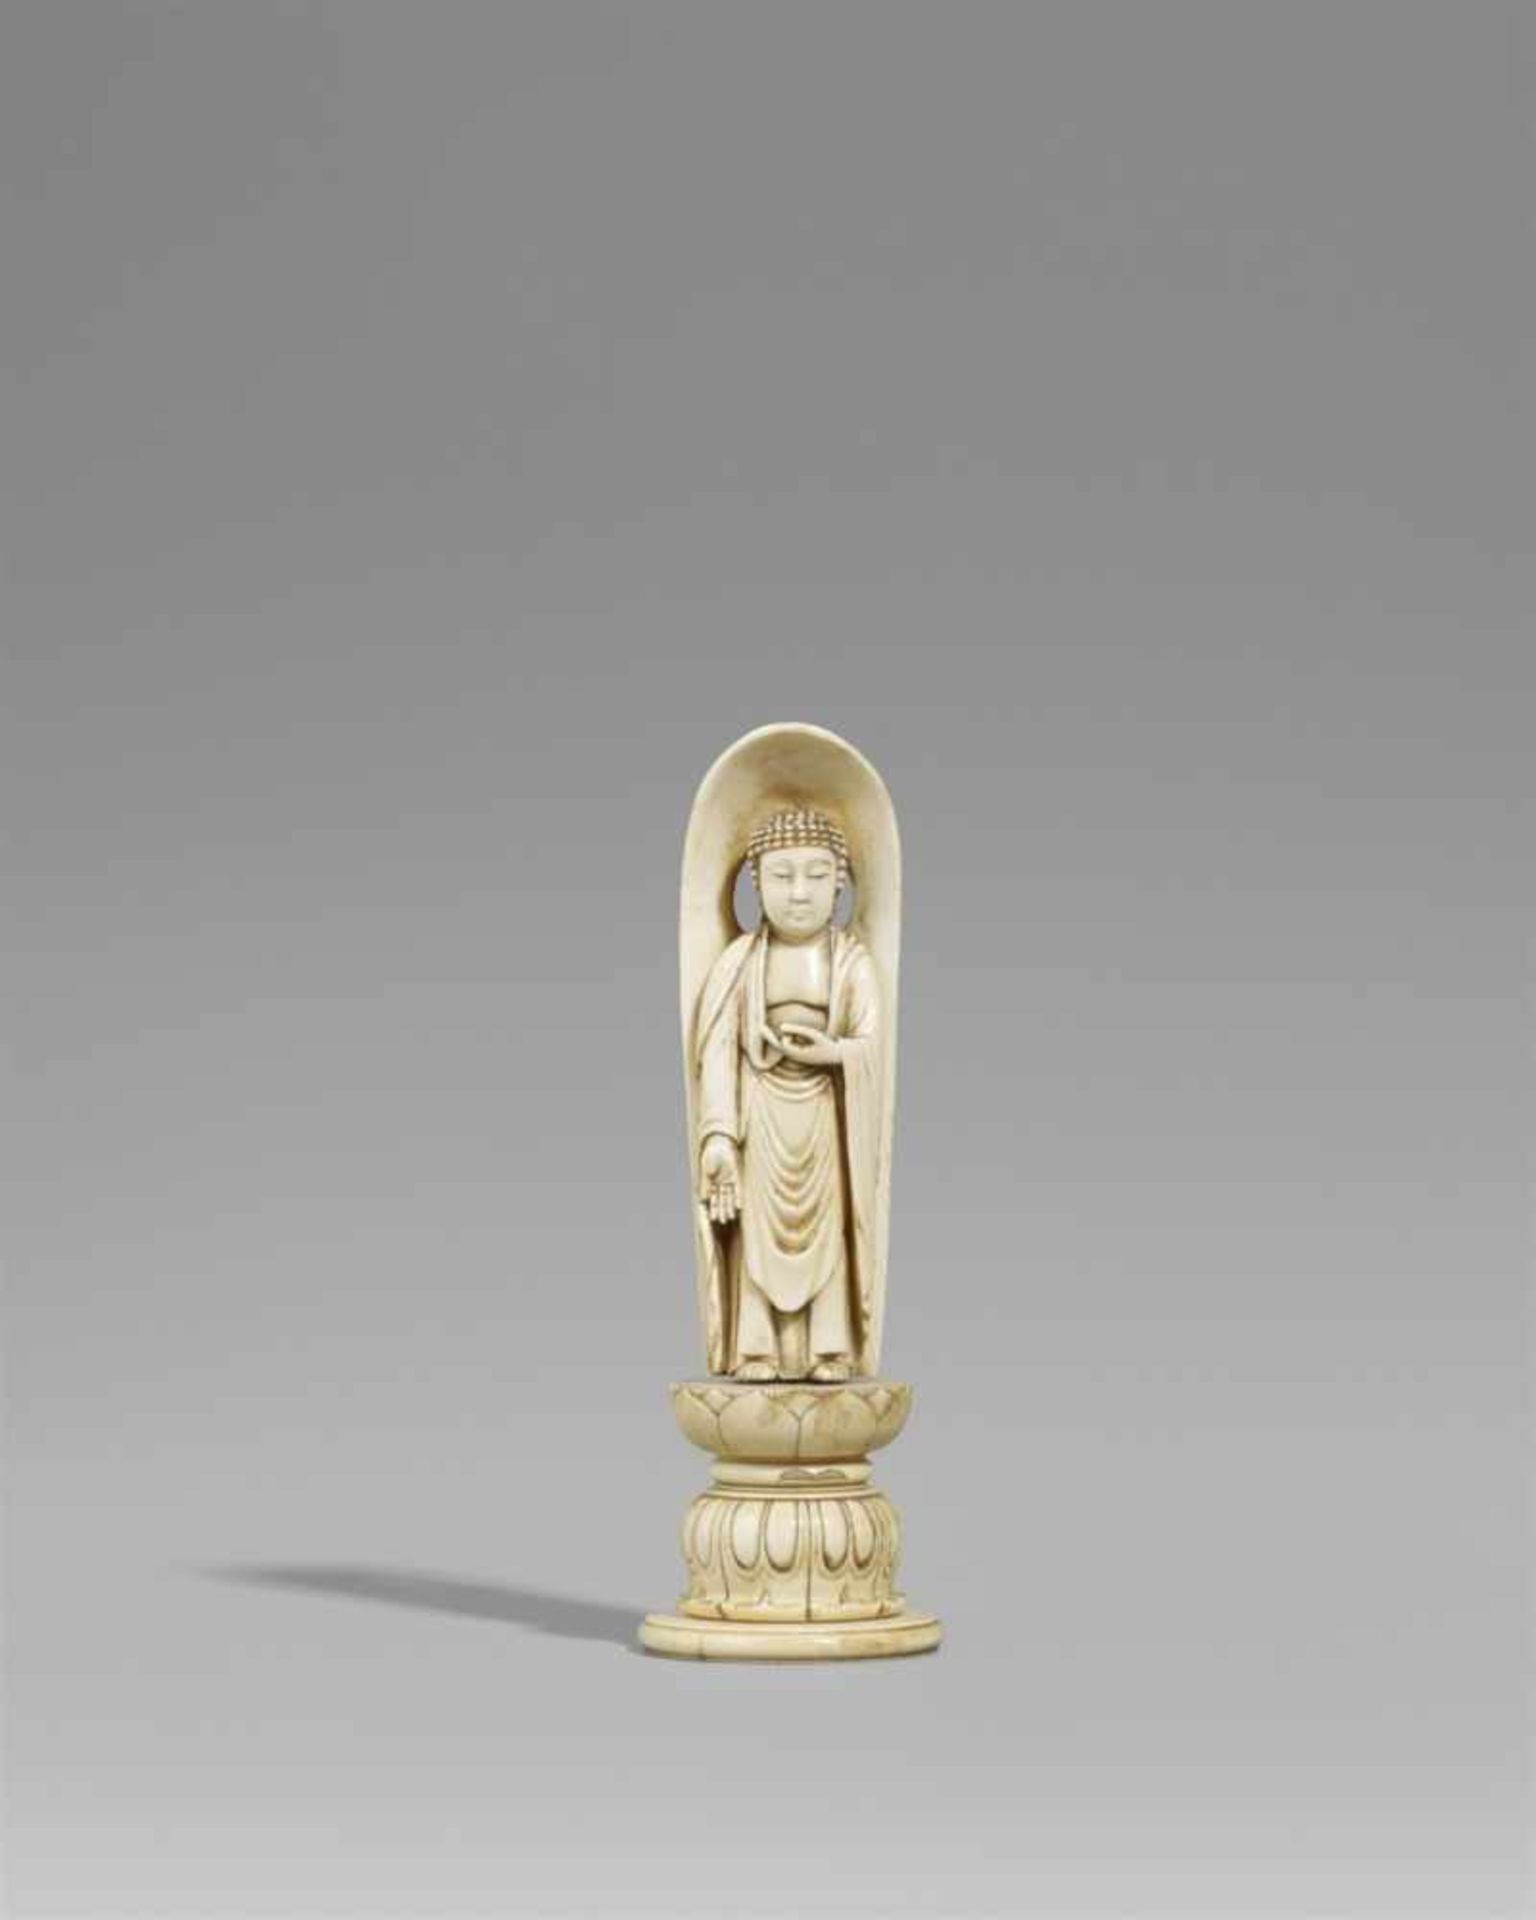 Okimono eines Buddha. Elfenbein. Spätes 19. Jh.Stehend mit einer herabhängenden und einer